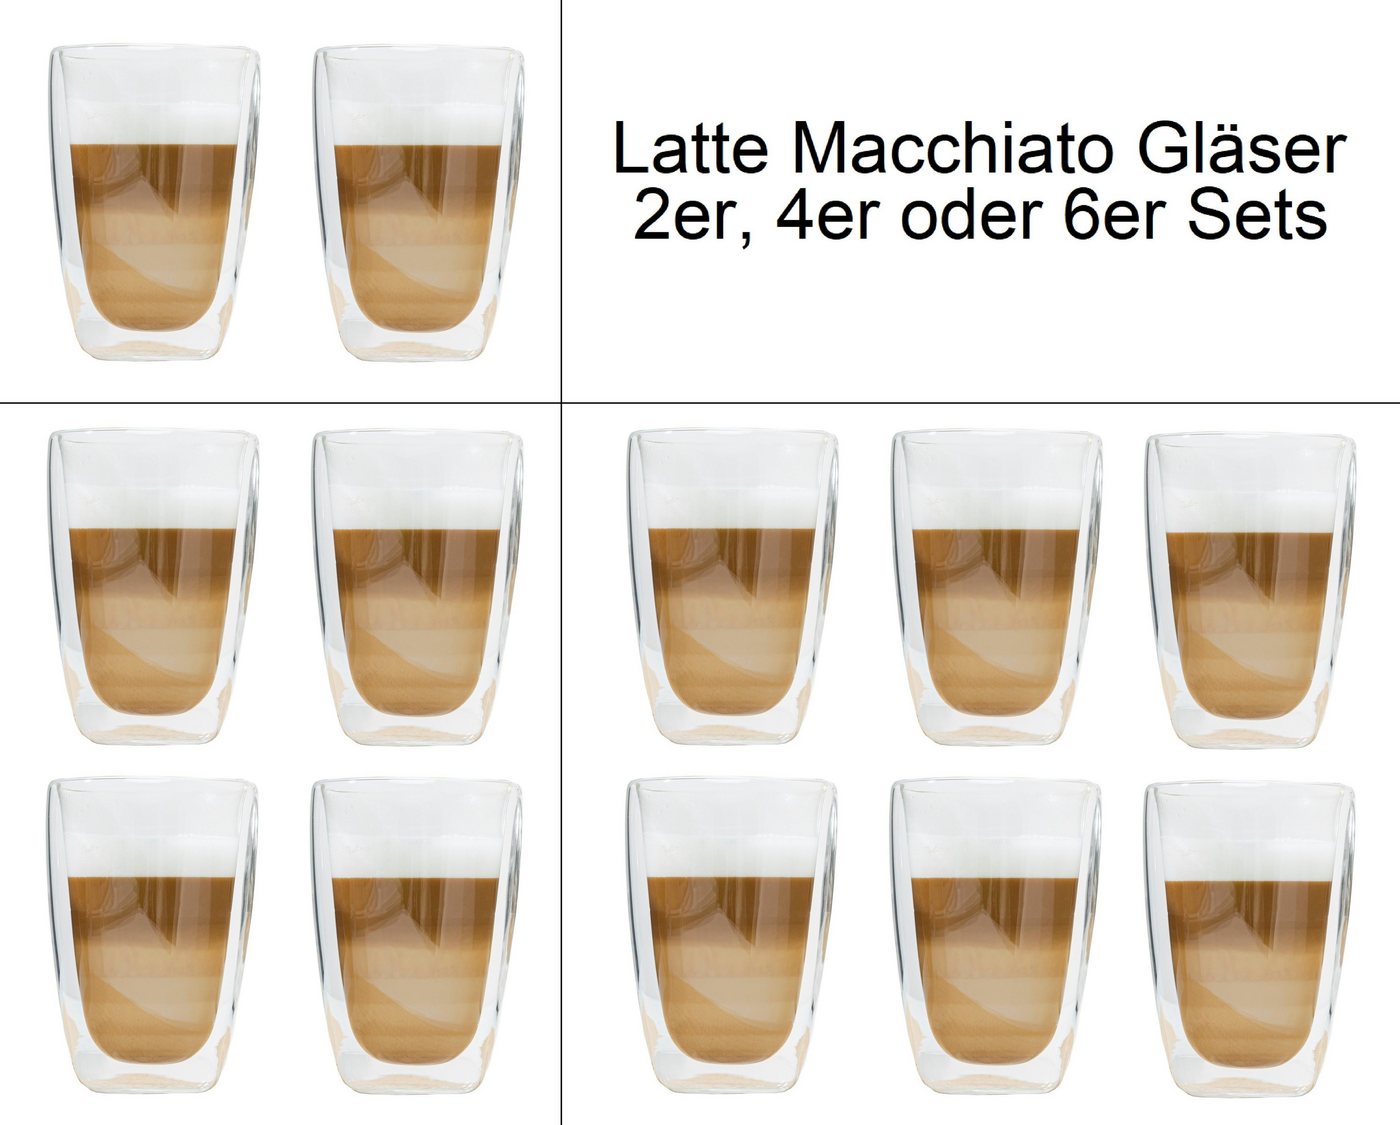 Haushalt International Latte-Macchiato-Glas Latte Macchiato-Gläser Doppelwandig isolierglas Extra lang warmhaltend, 400ml, spülmaschinengeeignet, mikrowellengeeignet von Haushalt International